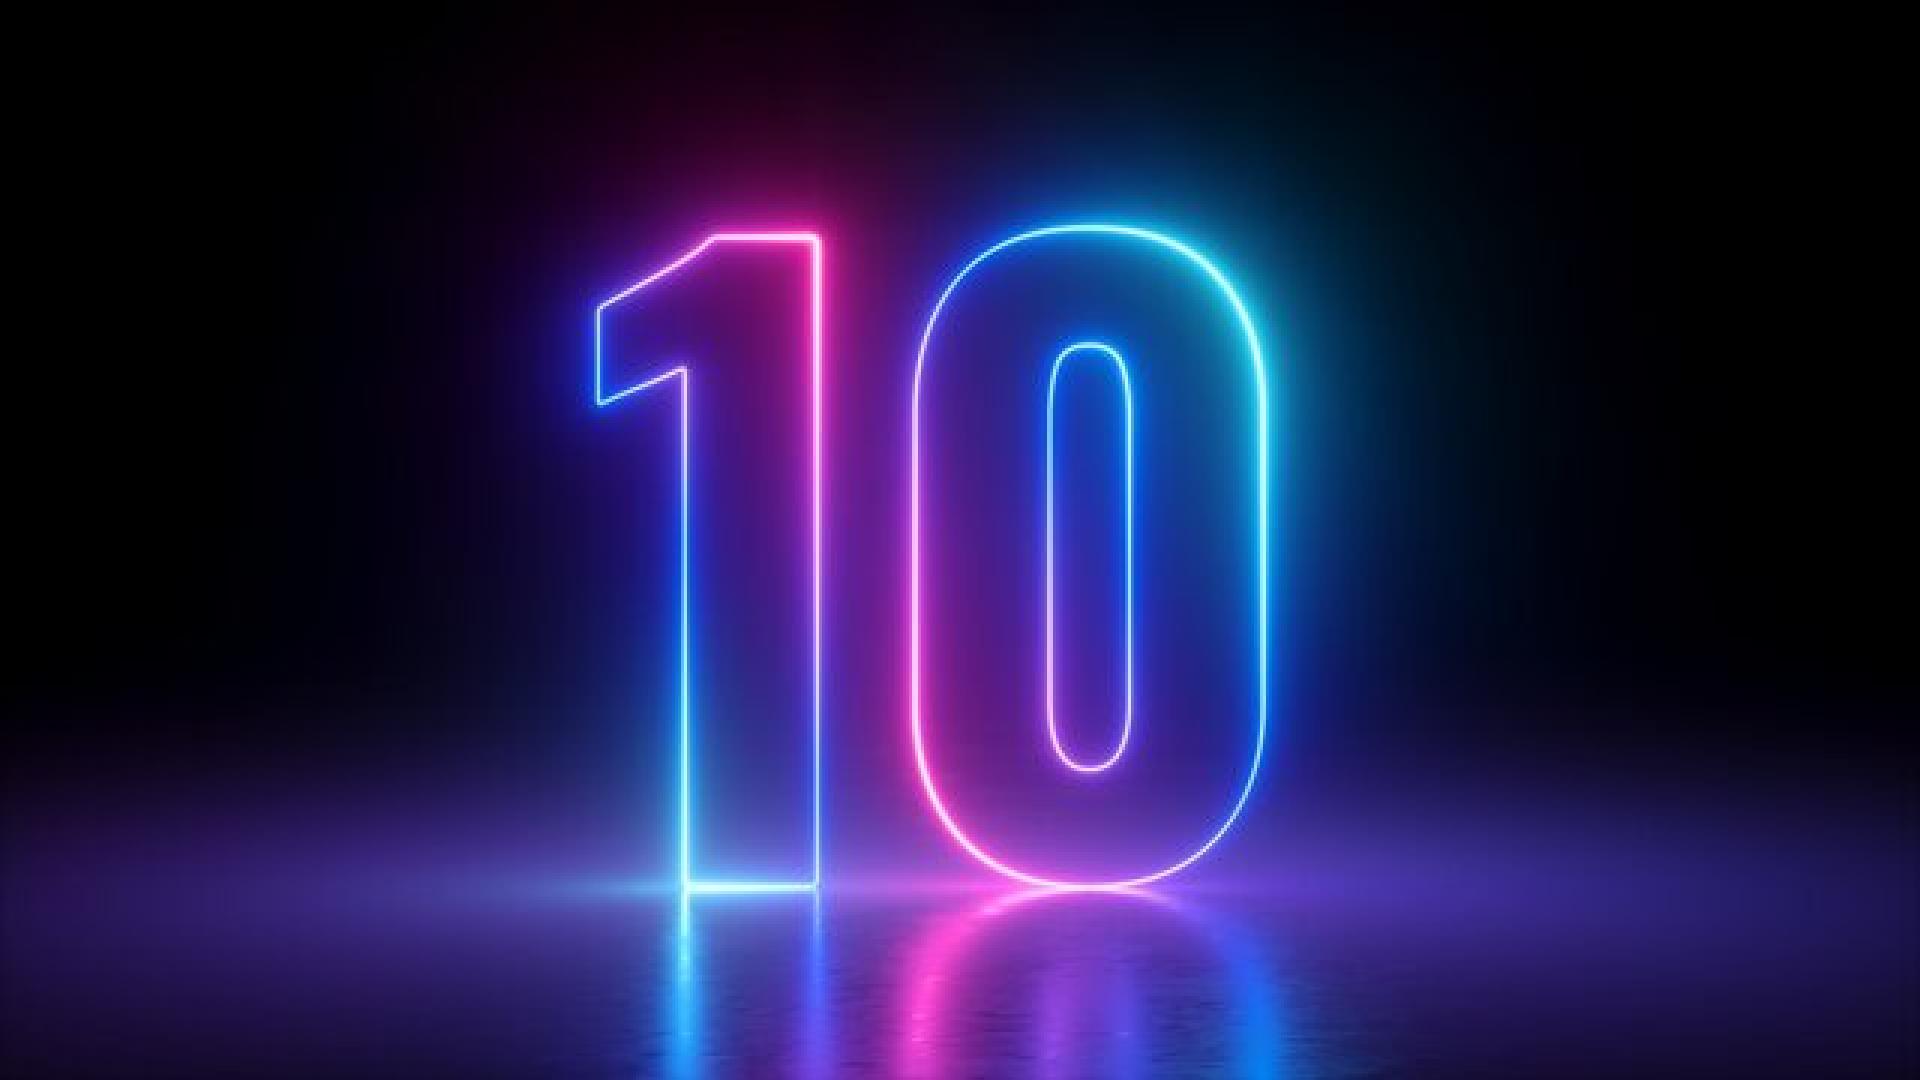 10 written in neon lights